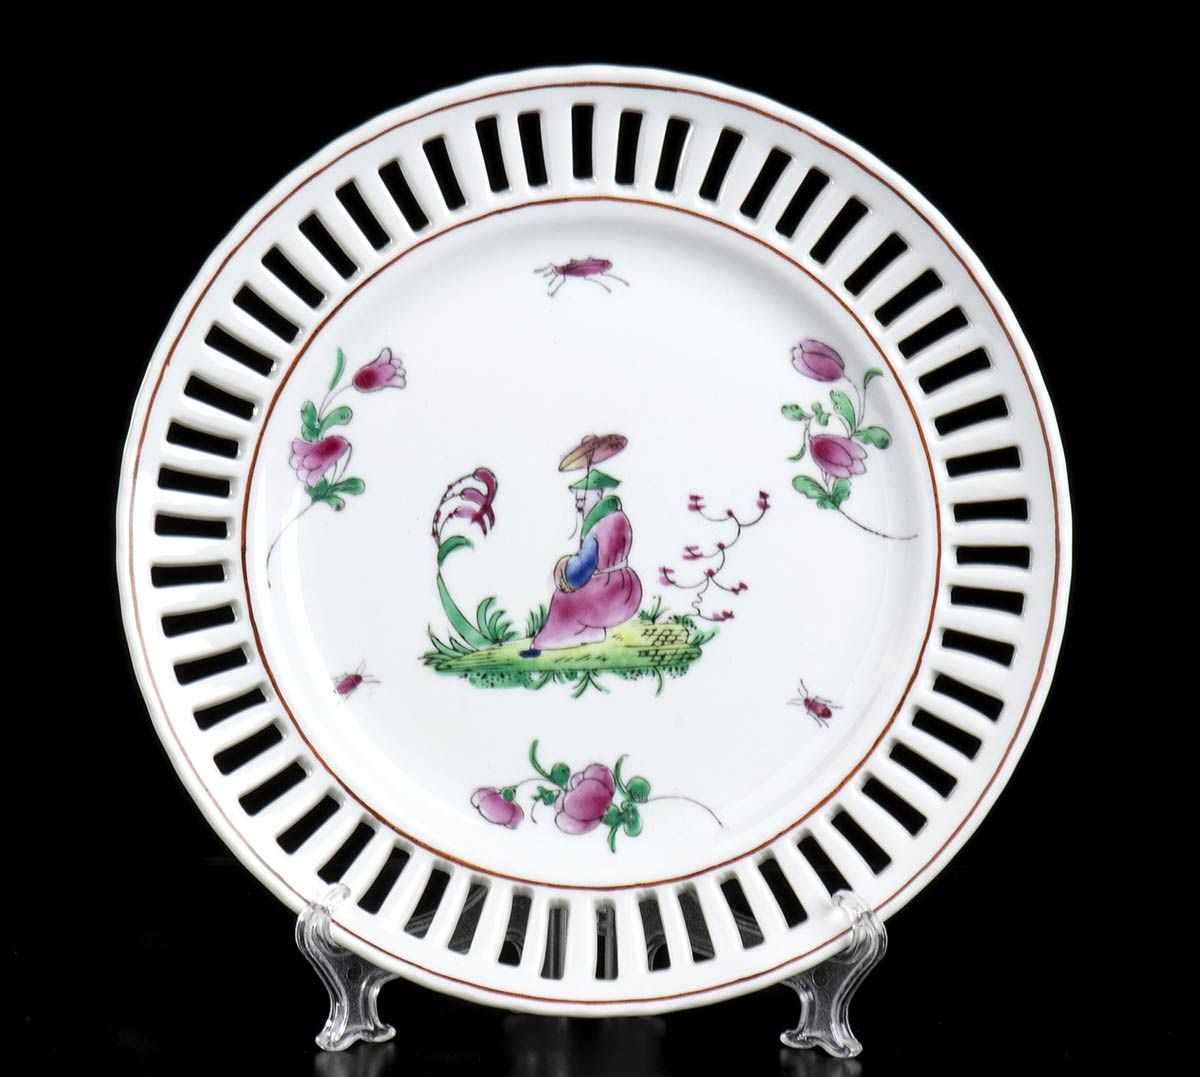 Null 三十七个彩绘瓷盘
欧洲

本拍品包括三十七个有镂空边缘的瓷盘，中间有一个精致的花丛中的中国坐像。

每个直径23厘米